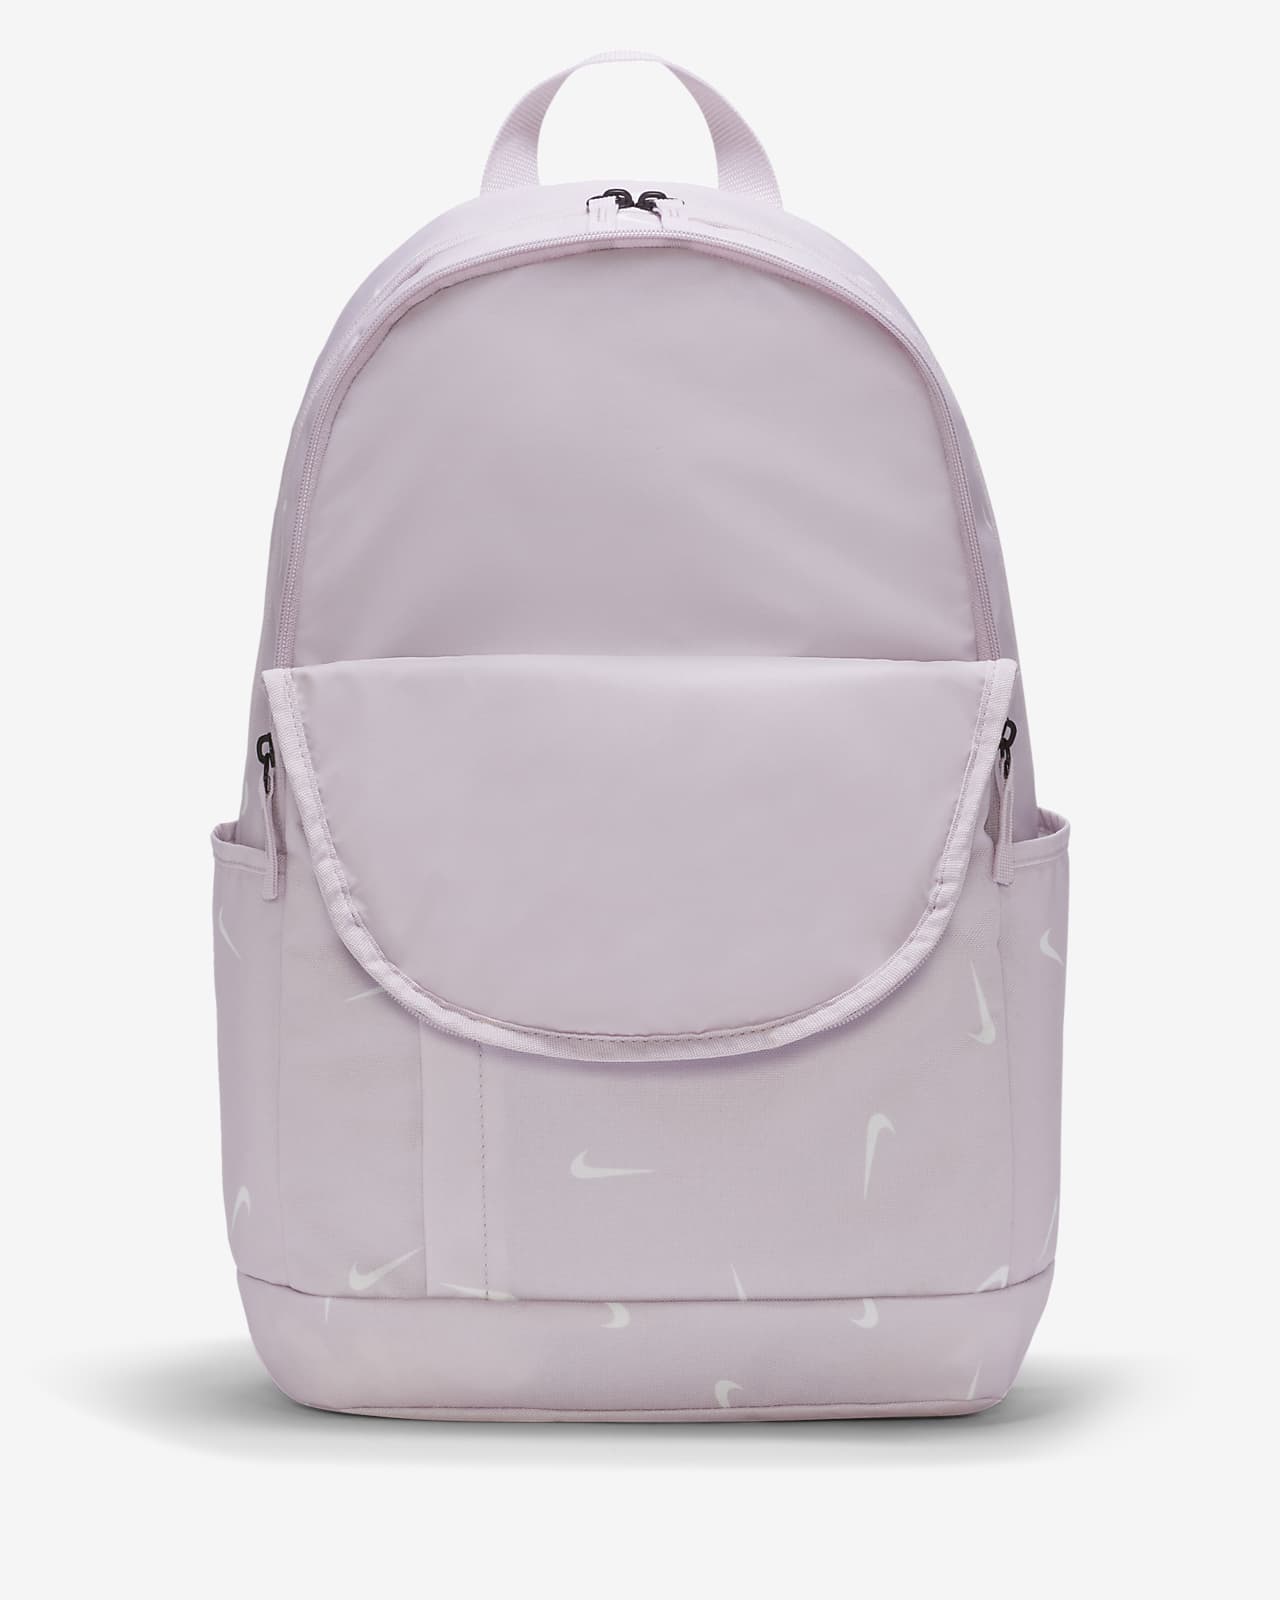 nike backpack size